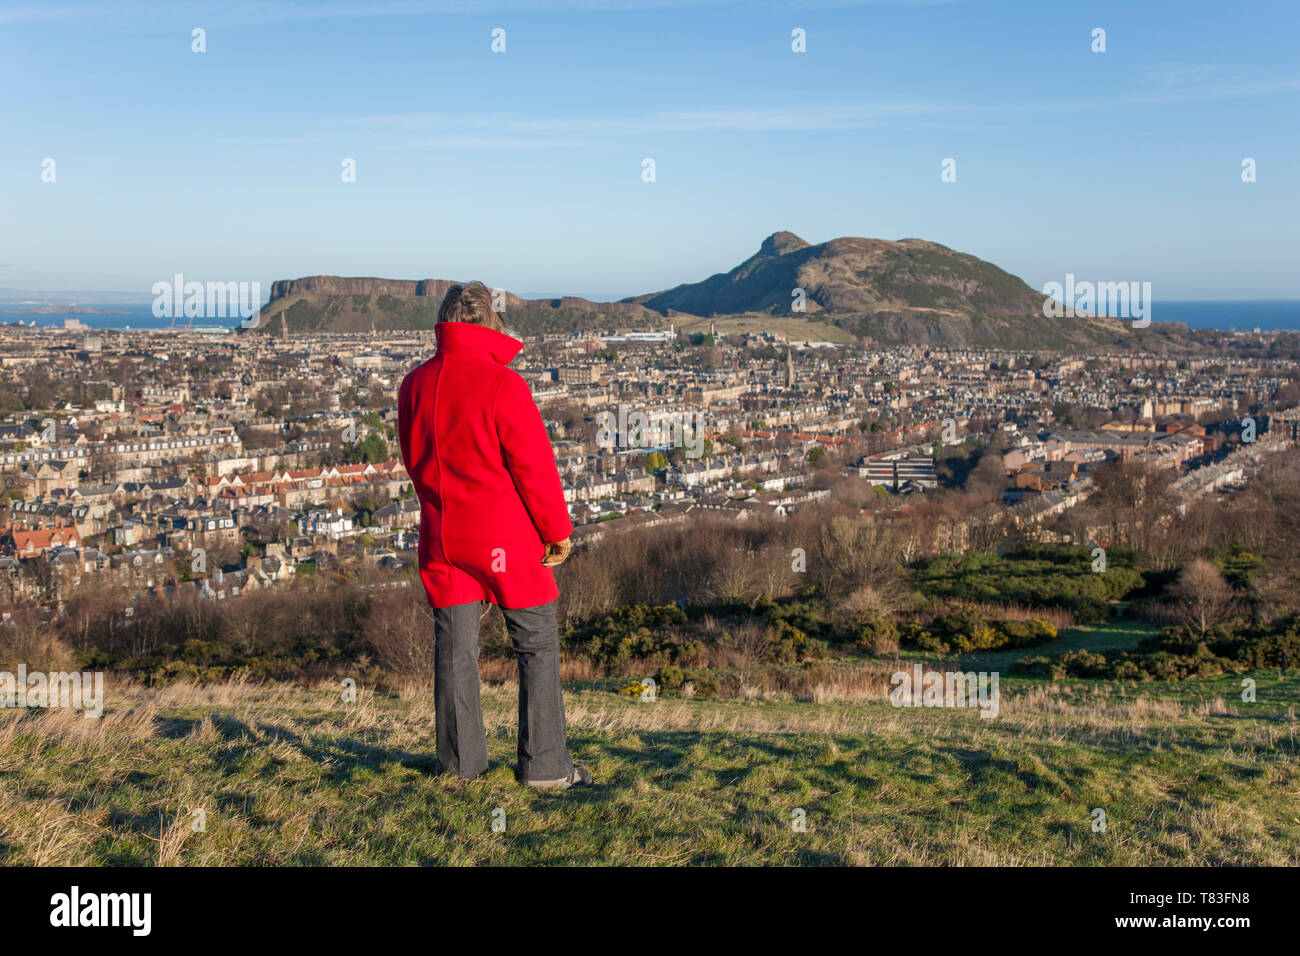 Edimburgo, ciudad de Edimburgo, Escocia. Mujer con abrigo rojo admira la vista desde Blackford sobre los tejados de Arthur's Seat. Foto de stock